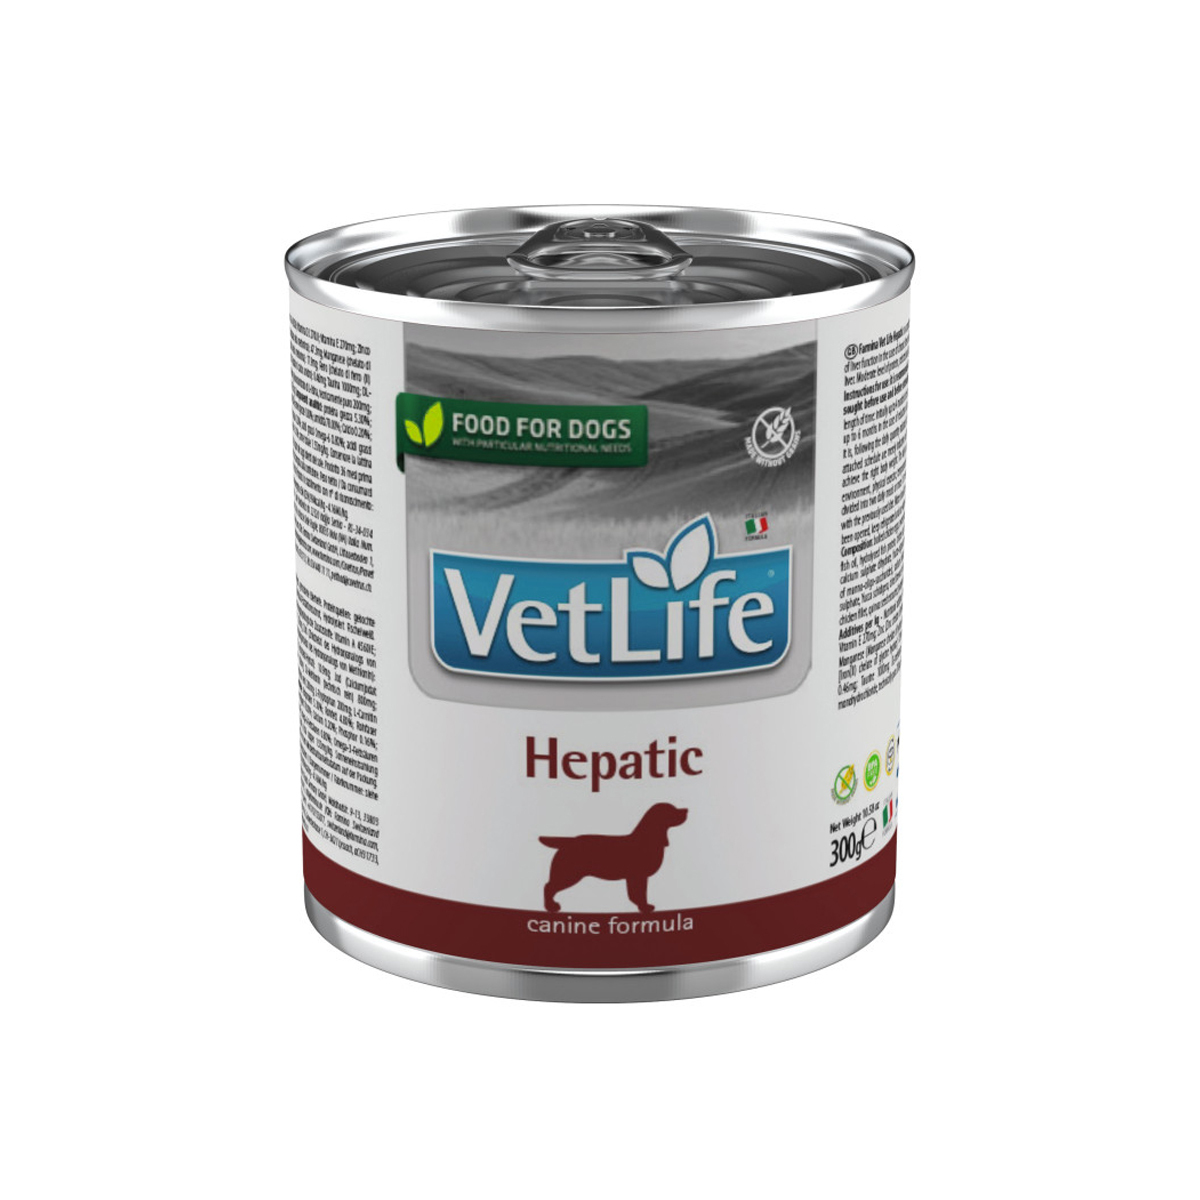 Вет лайф корм для собак. Vet Life Hypoallergenic консервы для собак. Консервы для собак vet Life. Паштет Gastro intestinal для собак. Farmina vet Life Hypoallergenic для собак консервы.